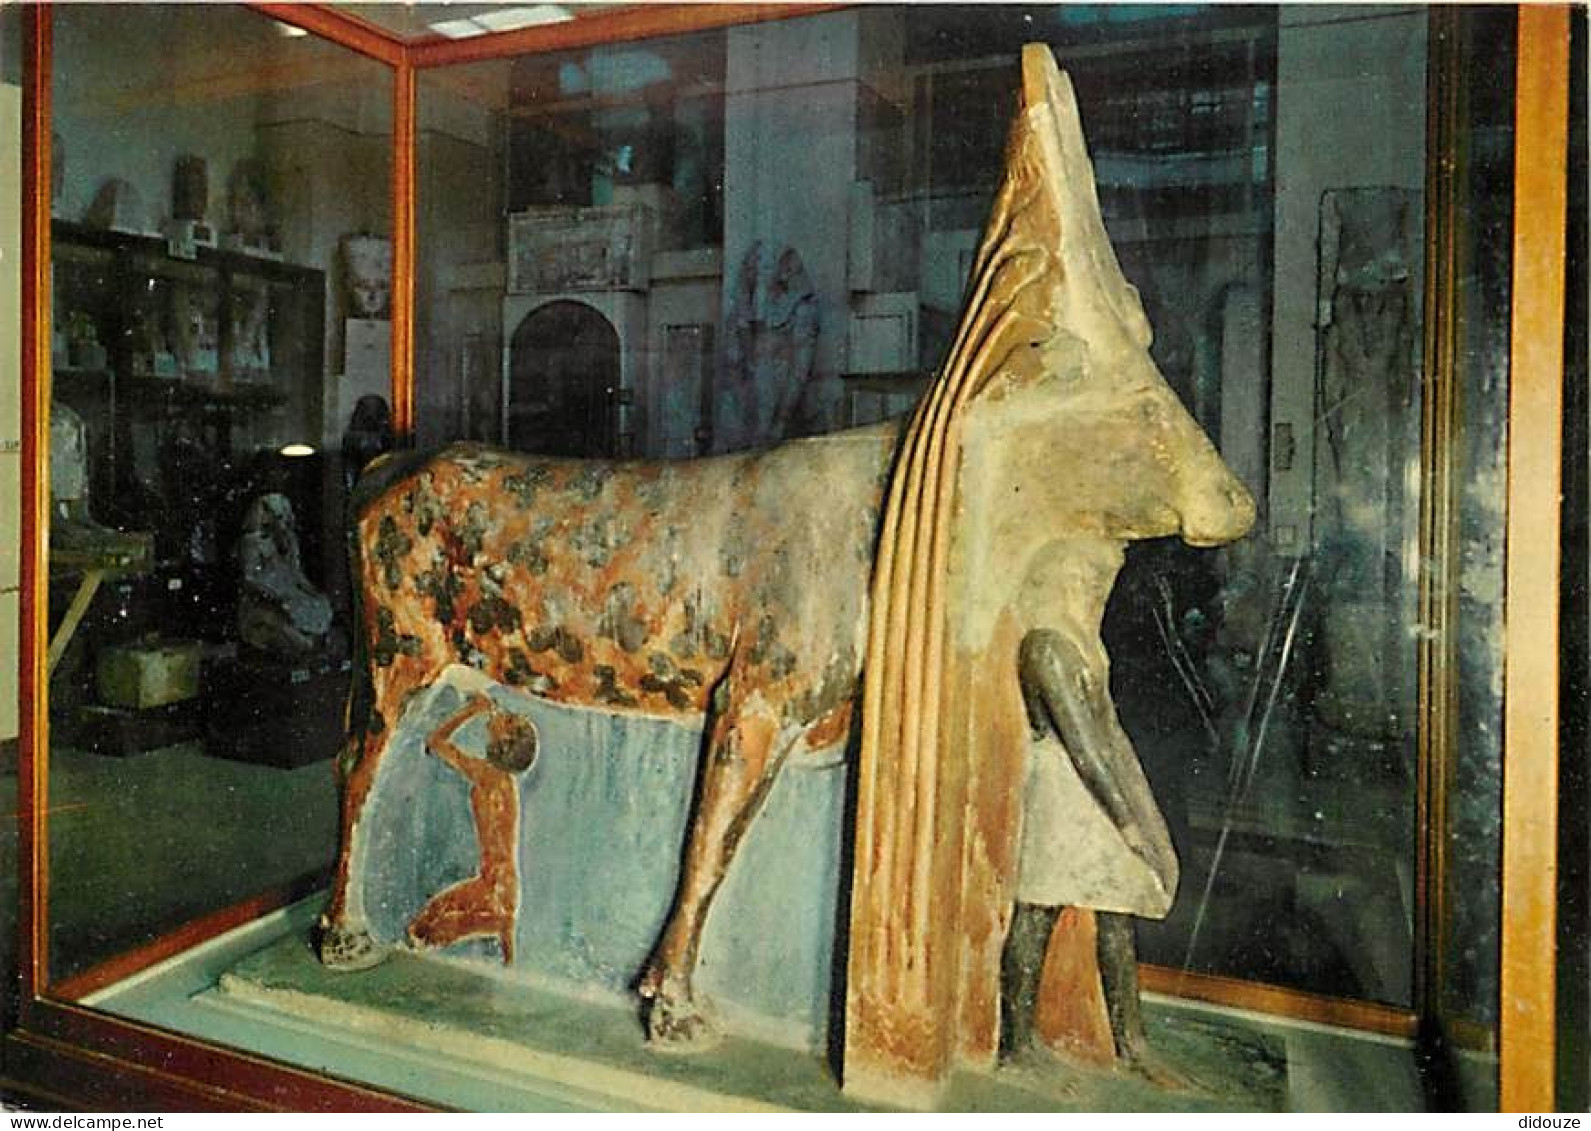 Egypte - Le Caire - Cairo - Musée Archéologique - Antiquité Egyptienne - King Amenhotep II Beneath The Hathor Cow - 1450 - Museos